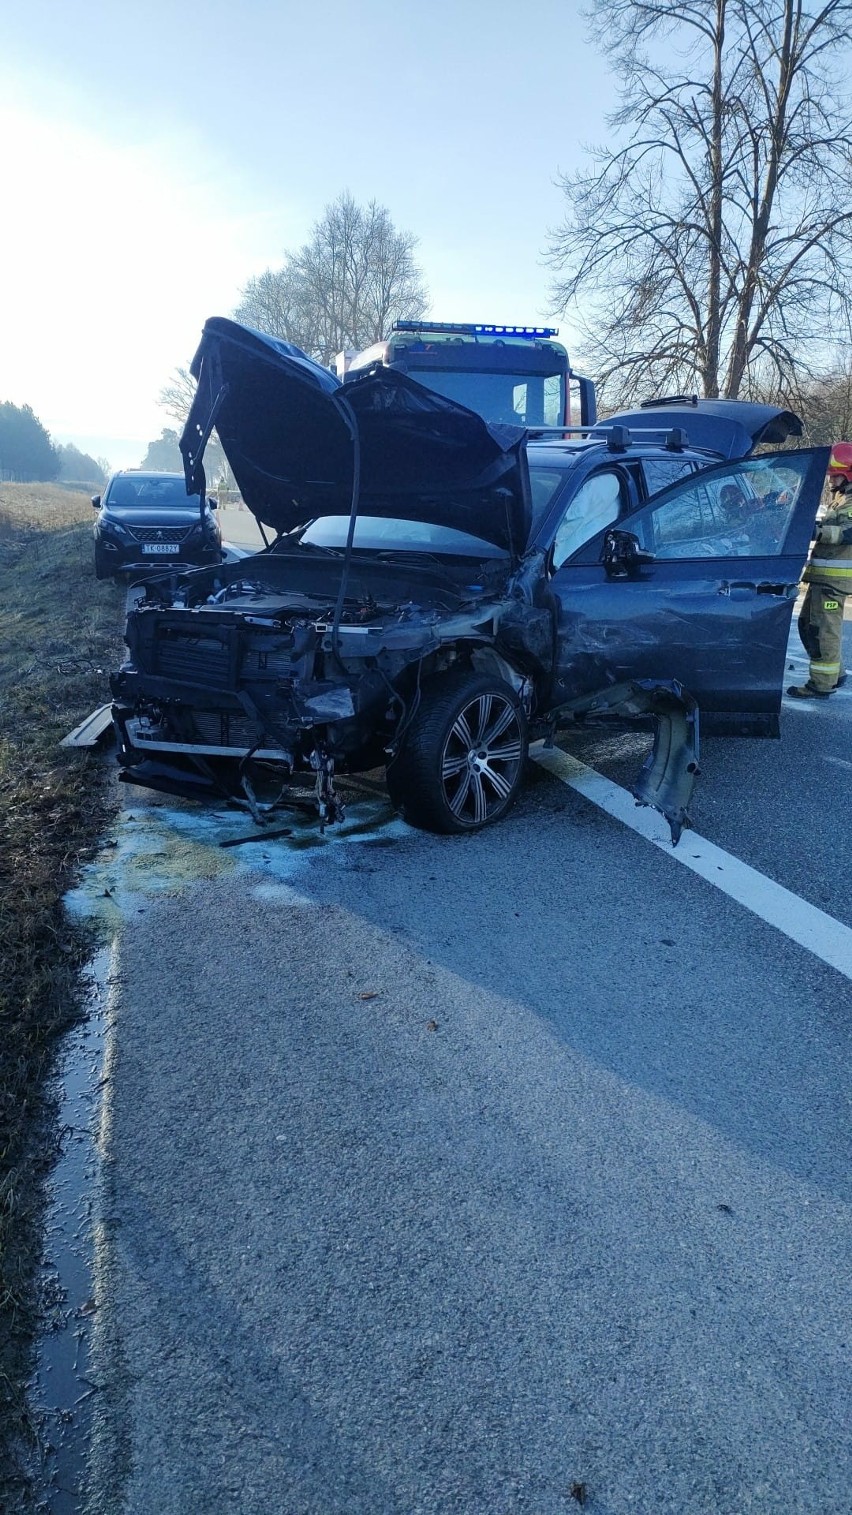 Wypadek na trasie S7 w Pągowcu w powiecie białobrzeskim. Samochód osobowy najechał na przyczepę